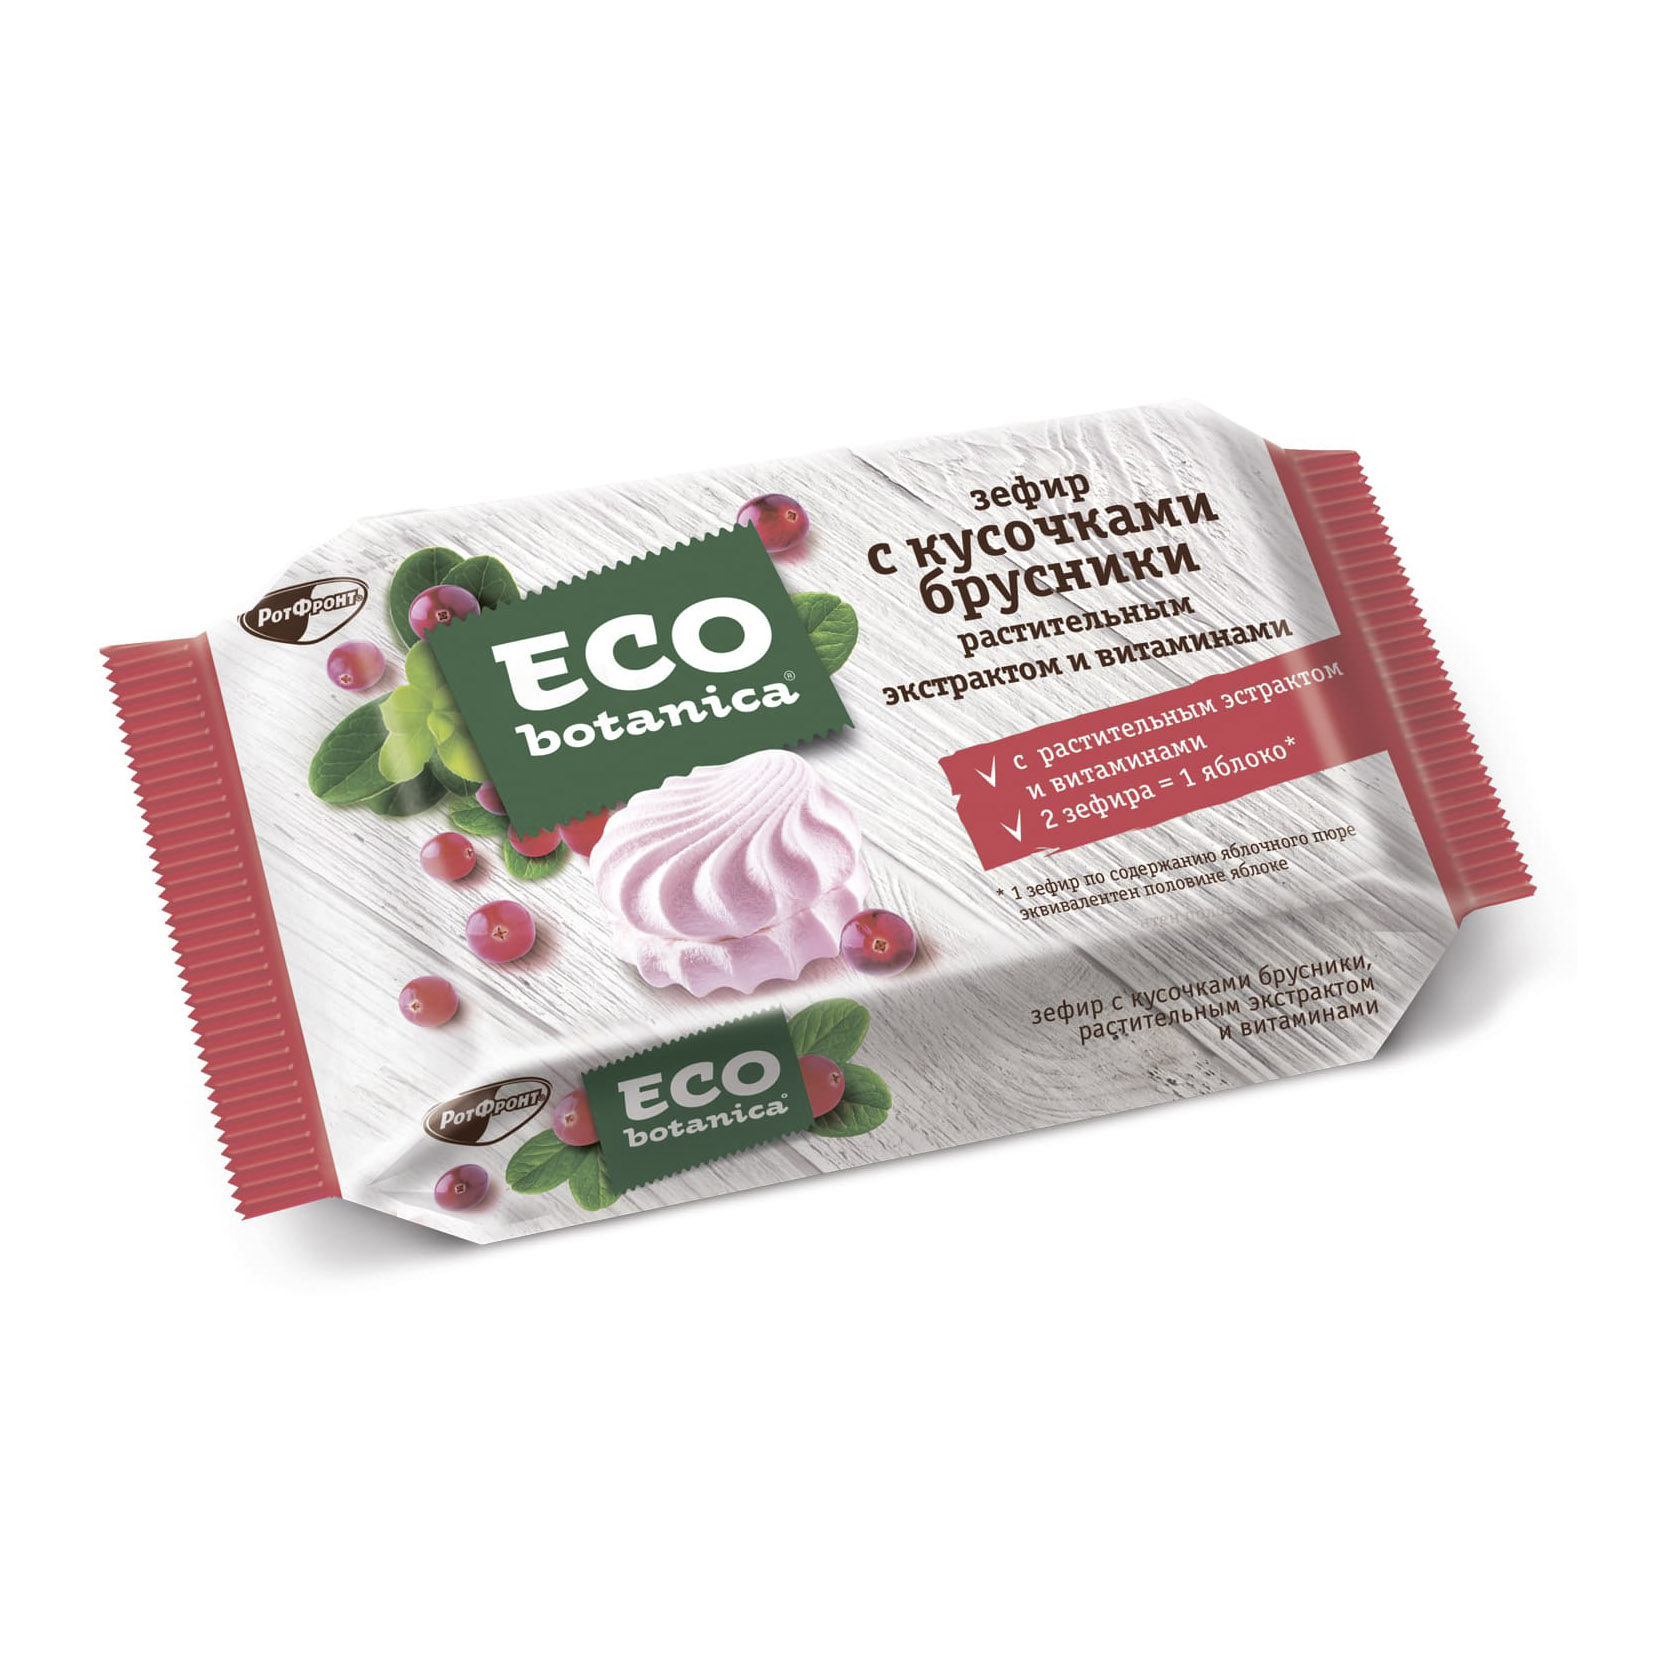 Зефир Eco Botanica с кусочками брусники, растительным экстрактом и витаминами 250 г зефир шармэль ванильно клюквенный 255 г